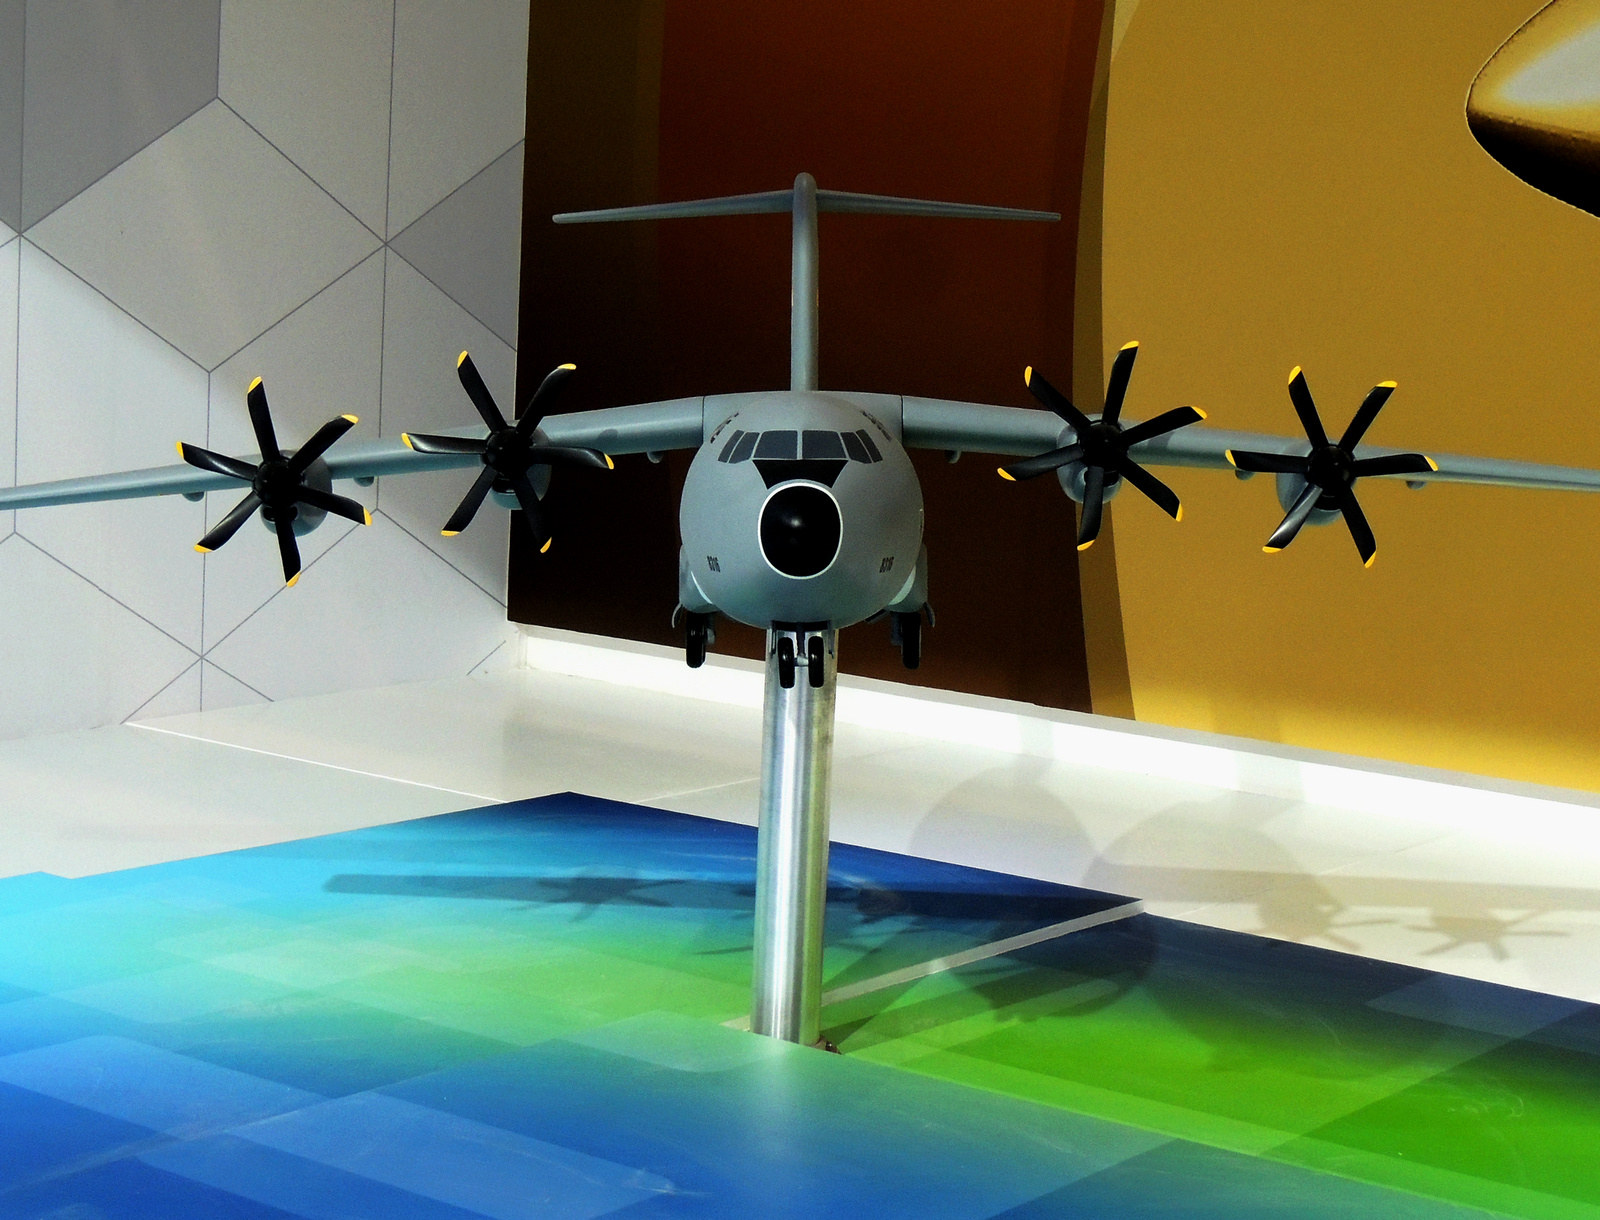 珠海航展上的運-30運輸機模型